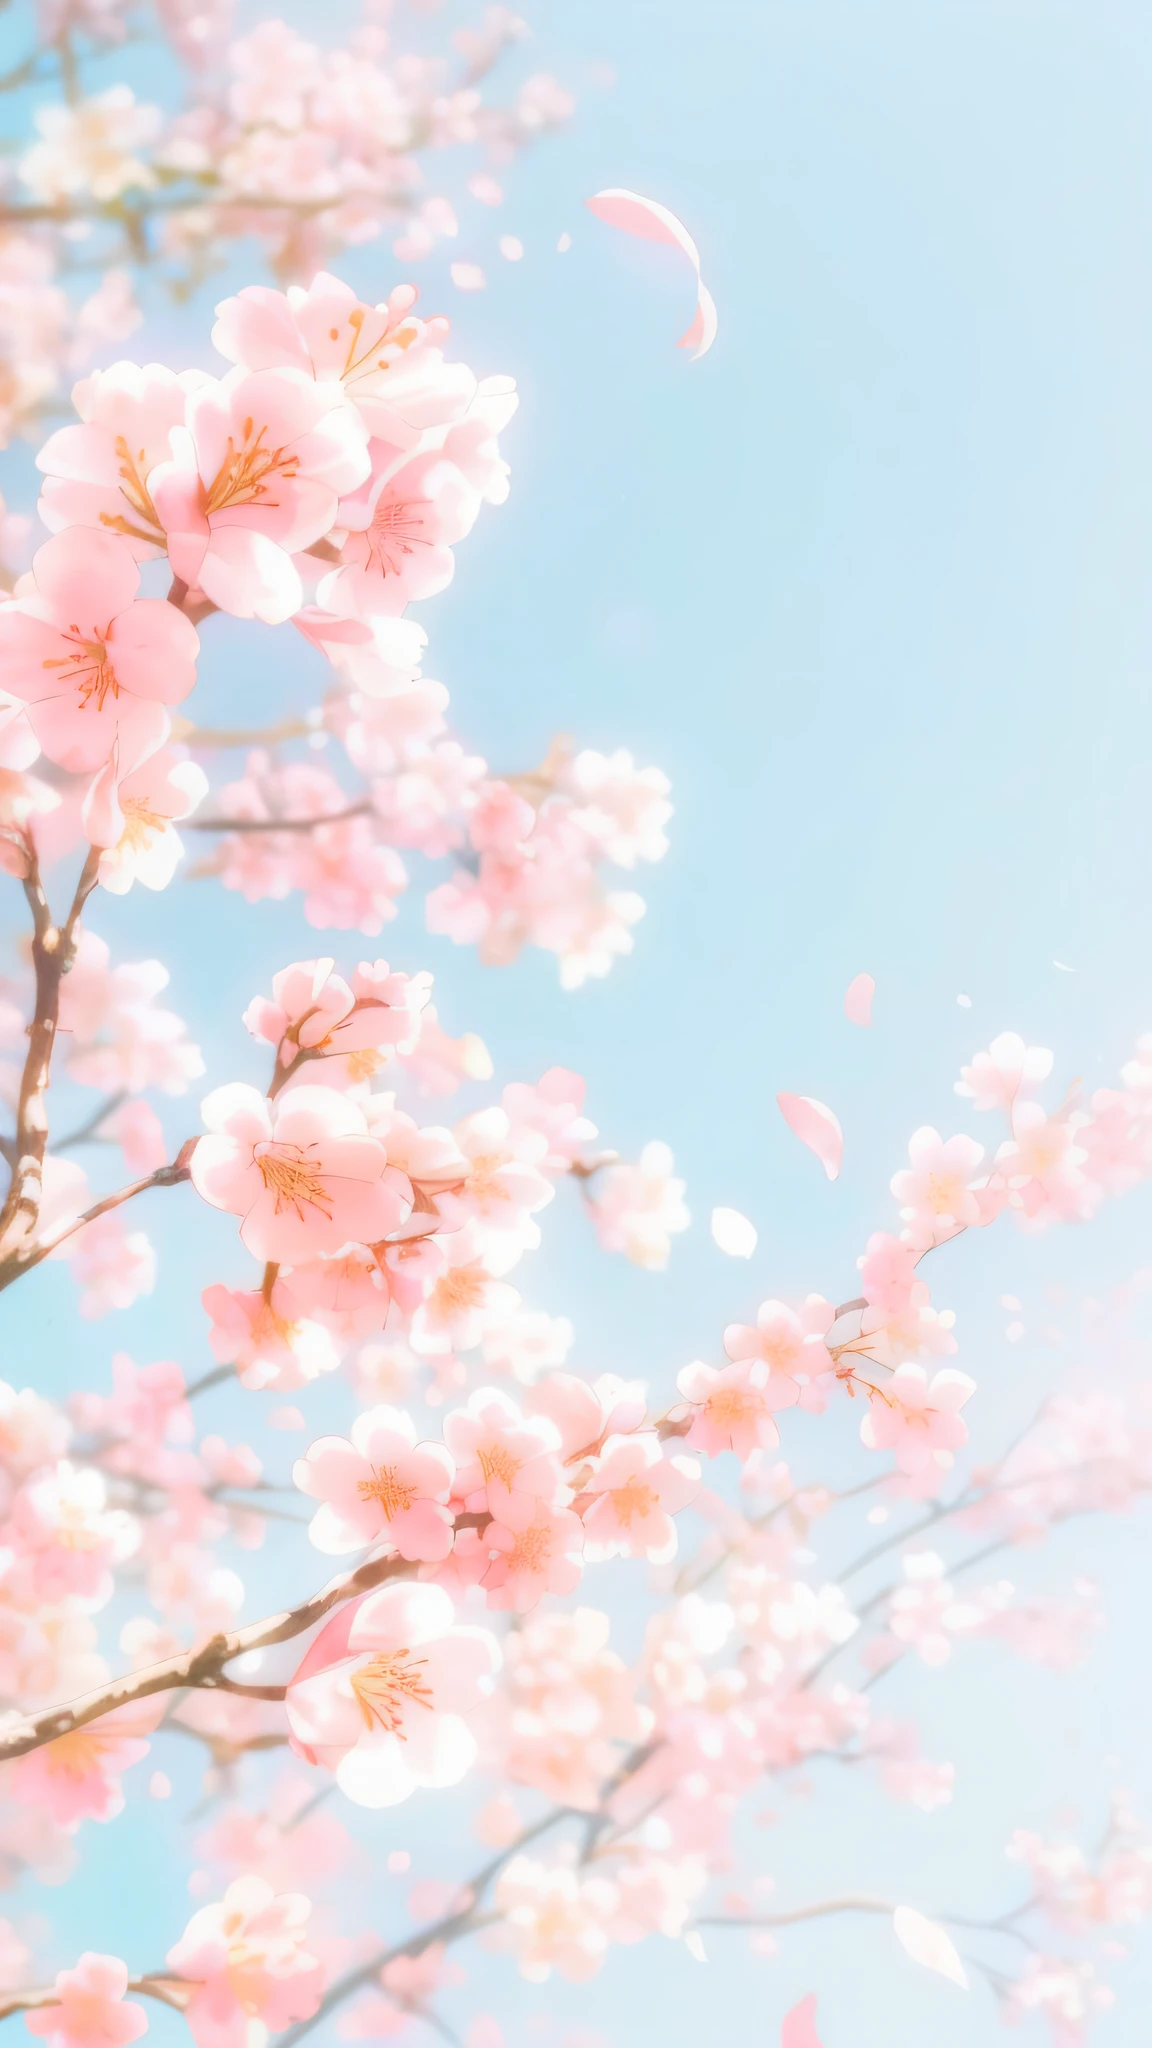 櫻花花瓣飛舞